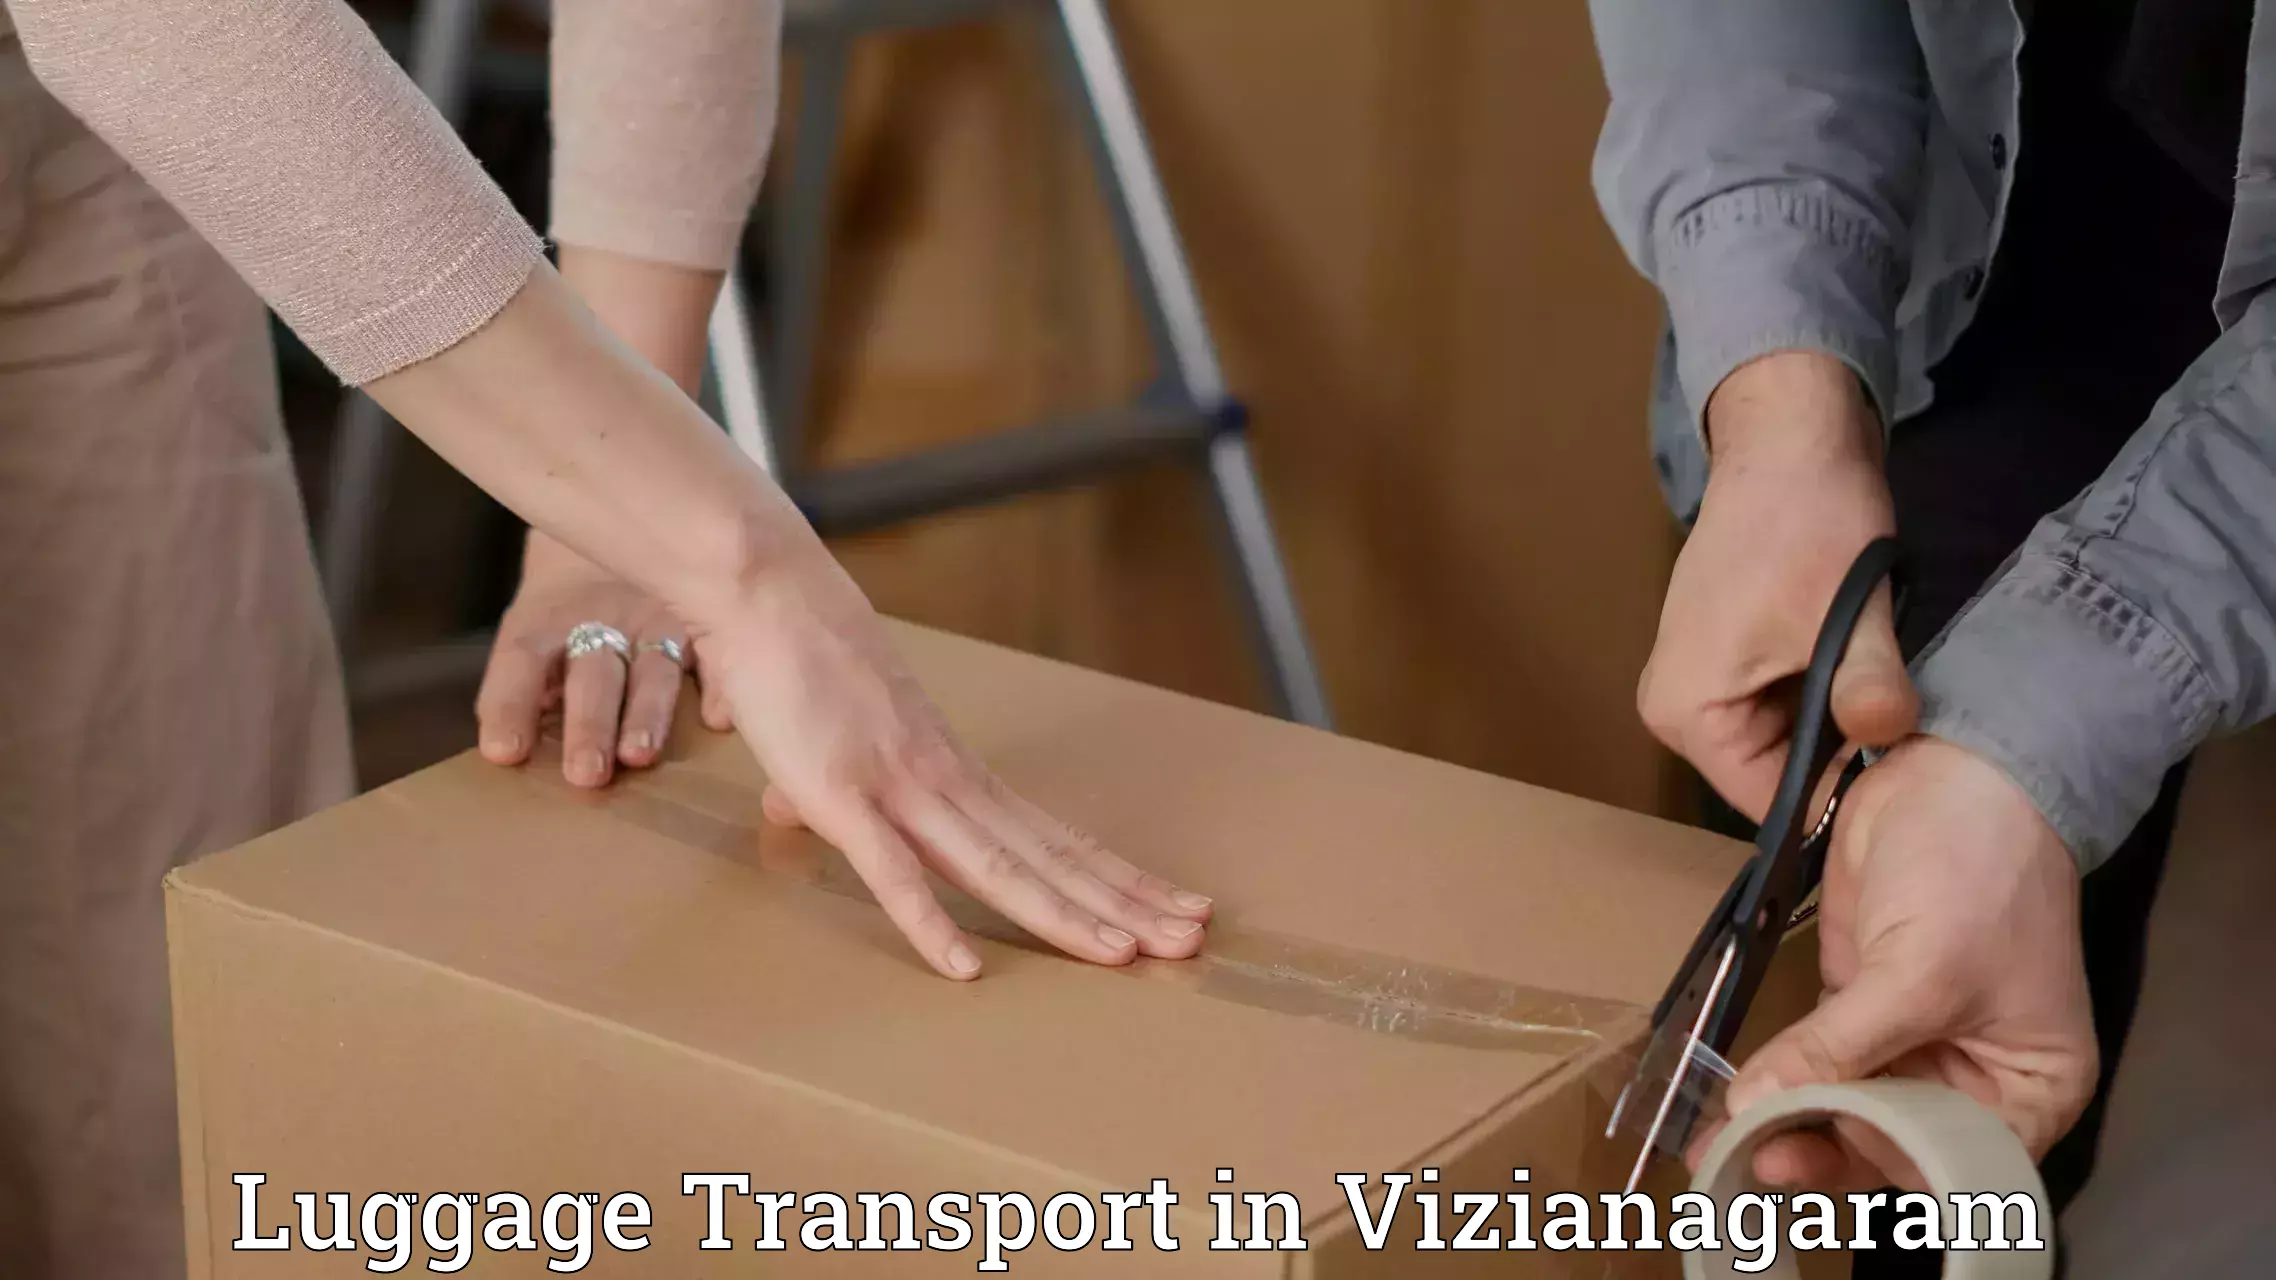 Luggage transport rates calculator in Vizianagaram